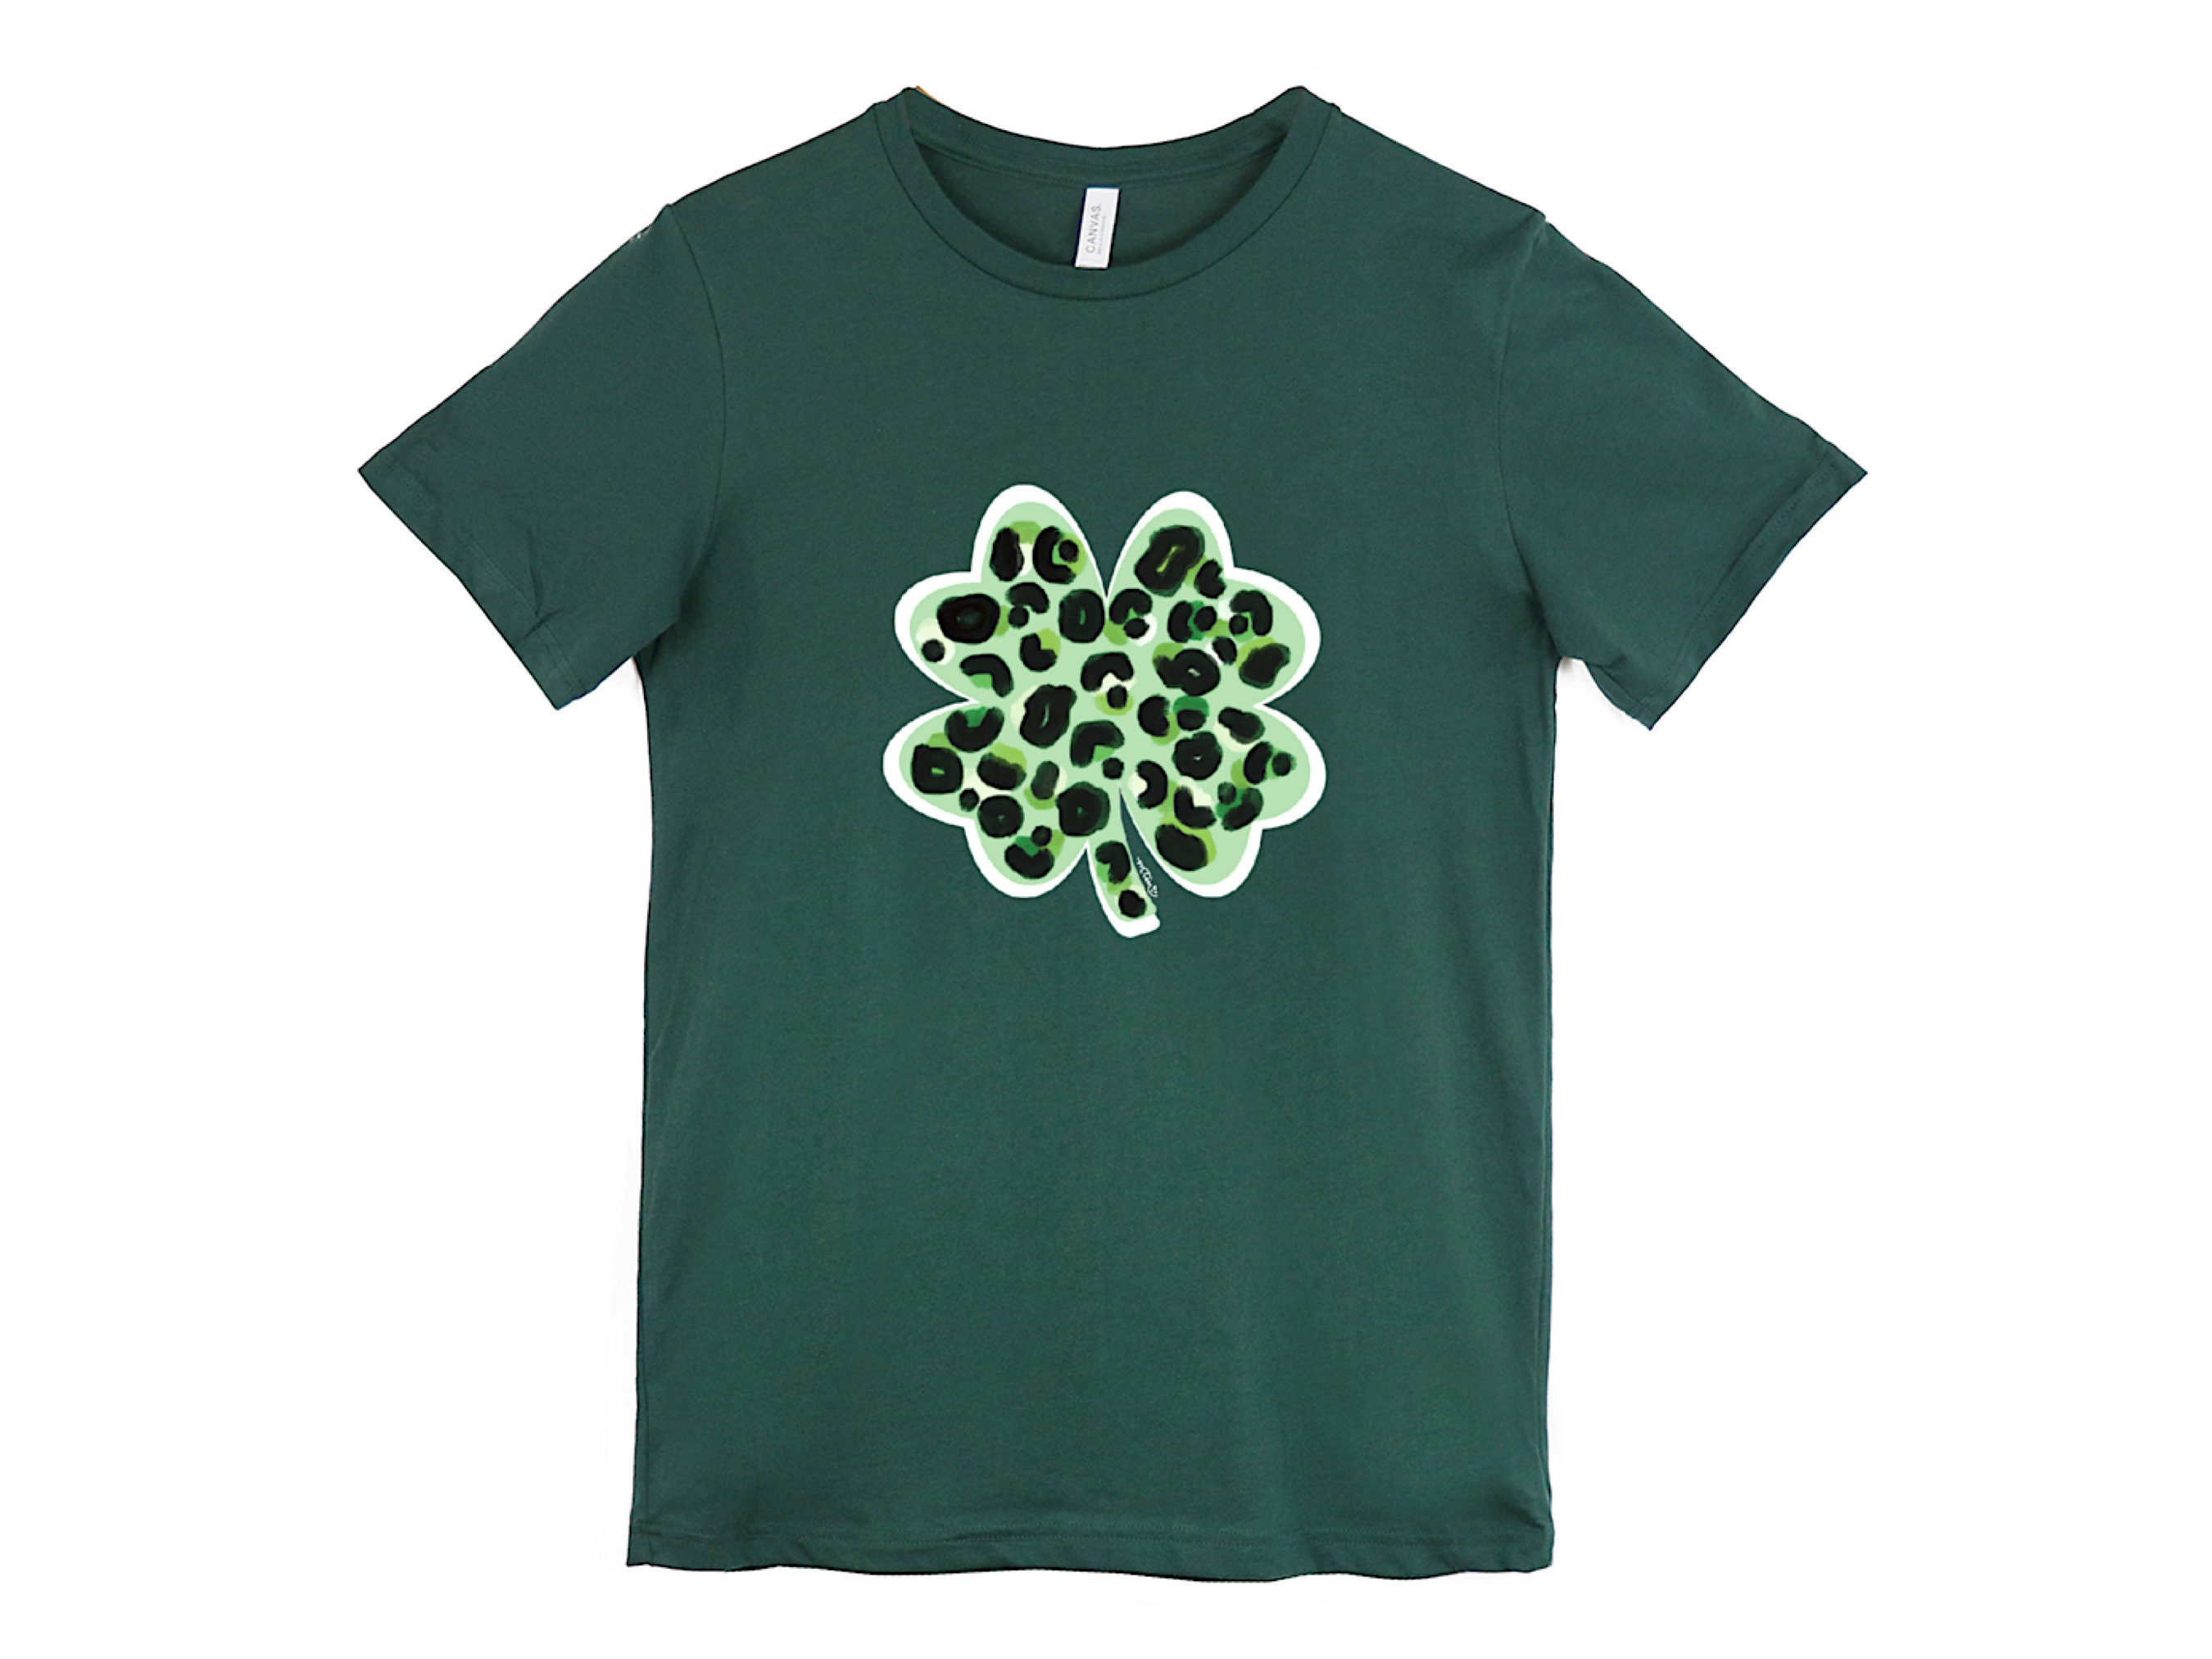 St. Patrick's Day Shirt, Clover Shirt, Leopard Shirt, Luck of the Irish ...